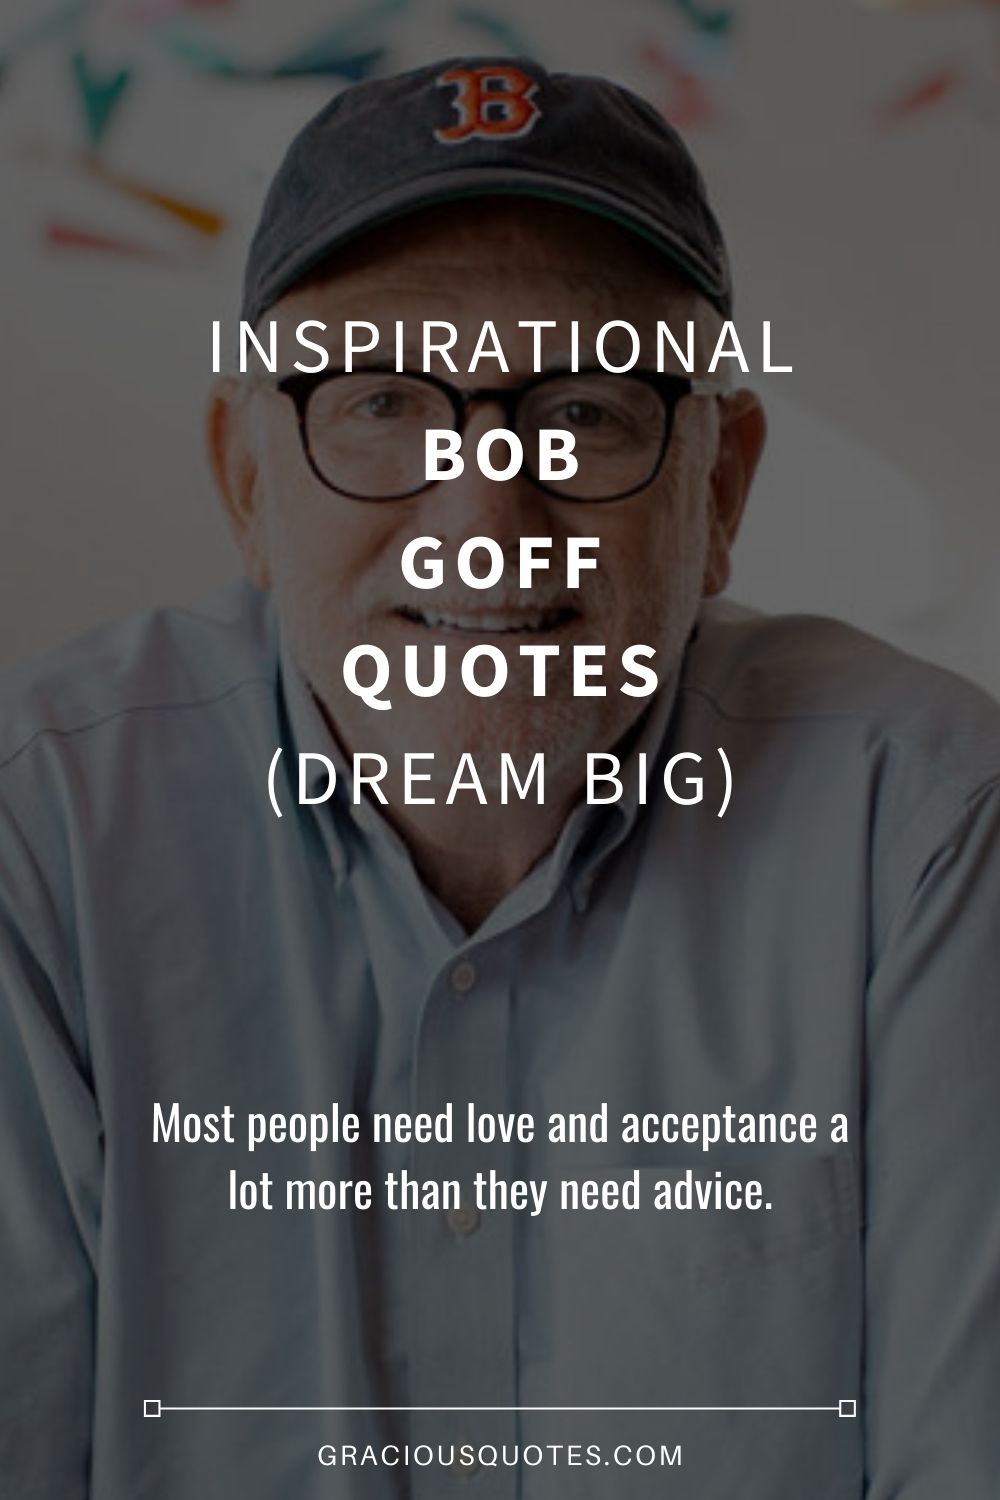 Inspirational Bob Goff Quotes (DREAM BIG) - Gracious Quotes